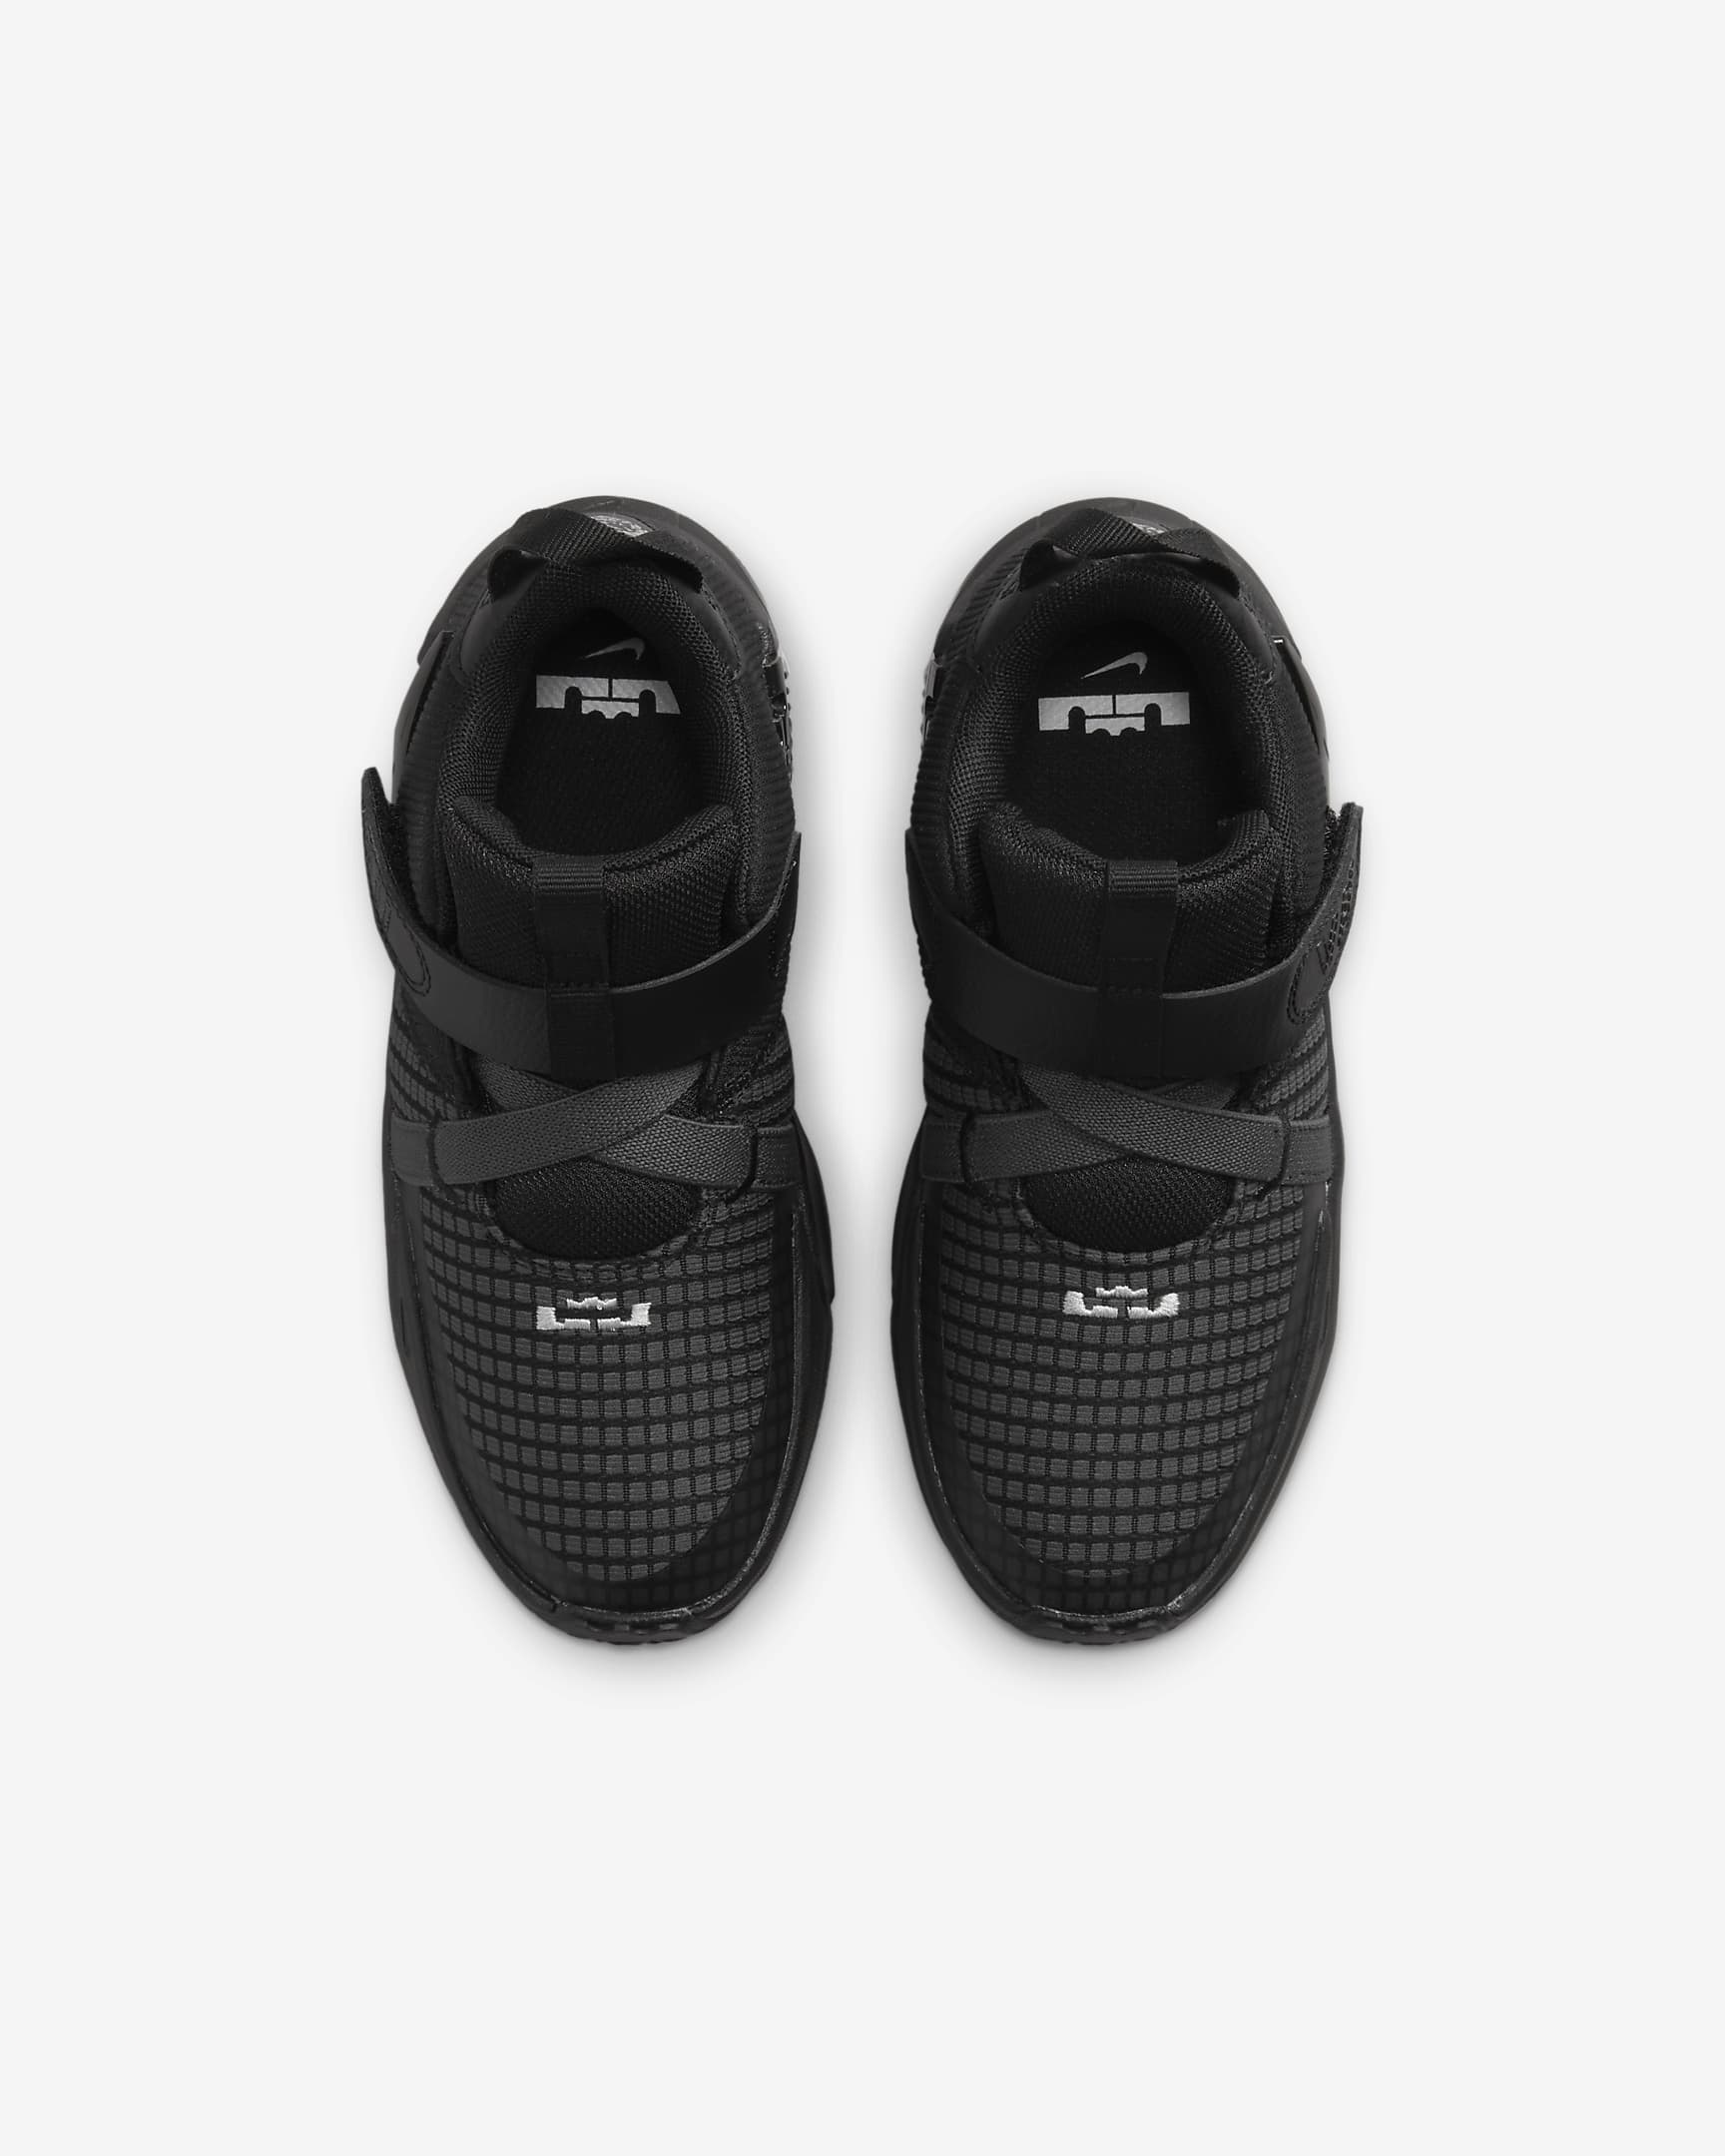 LeBron Witness 7 Little Kids' Shoes. Nike.com